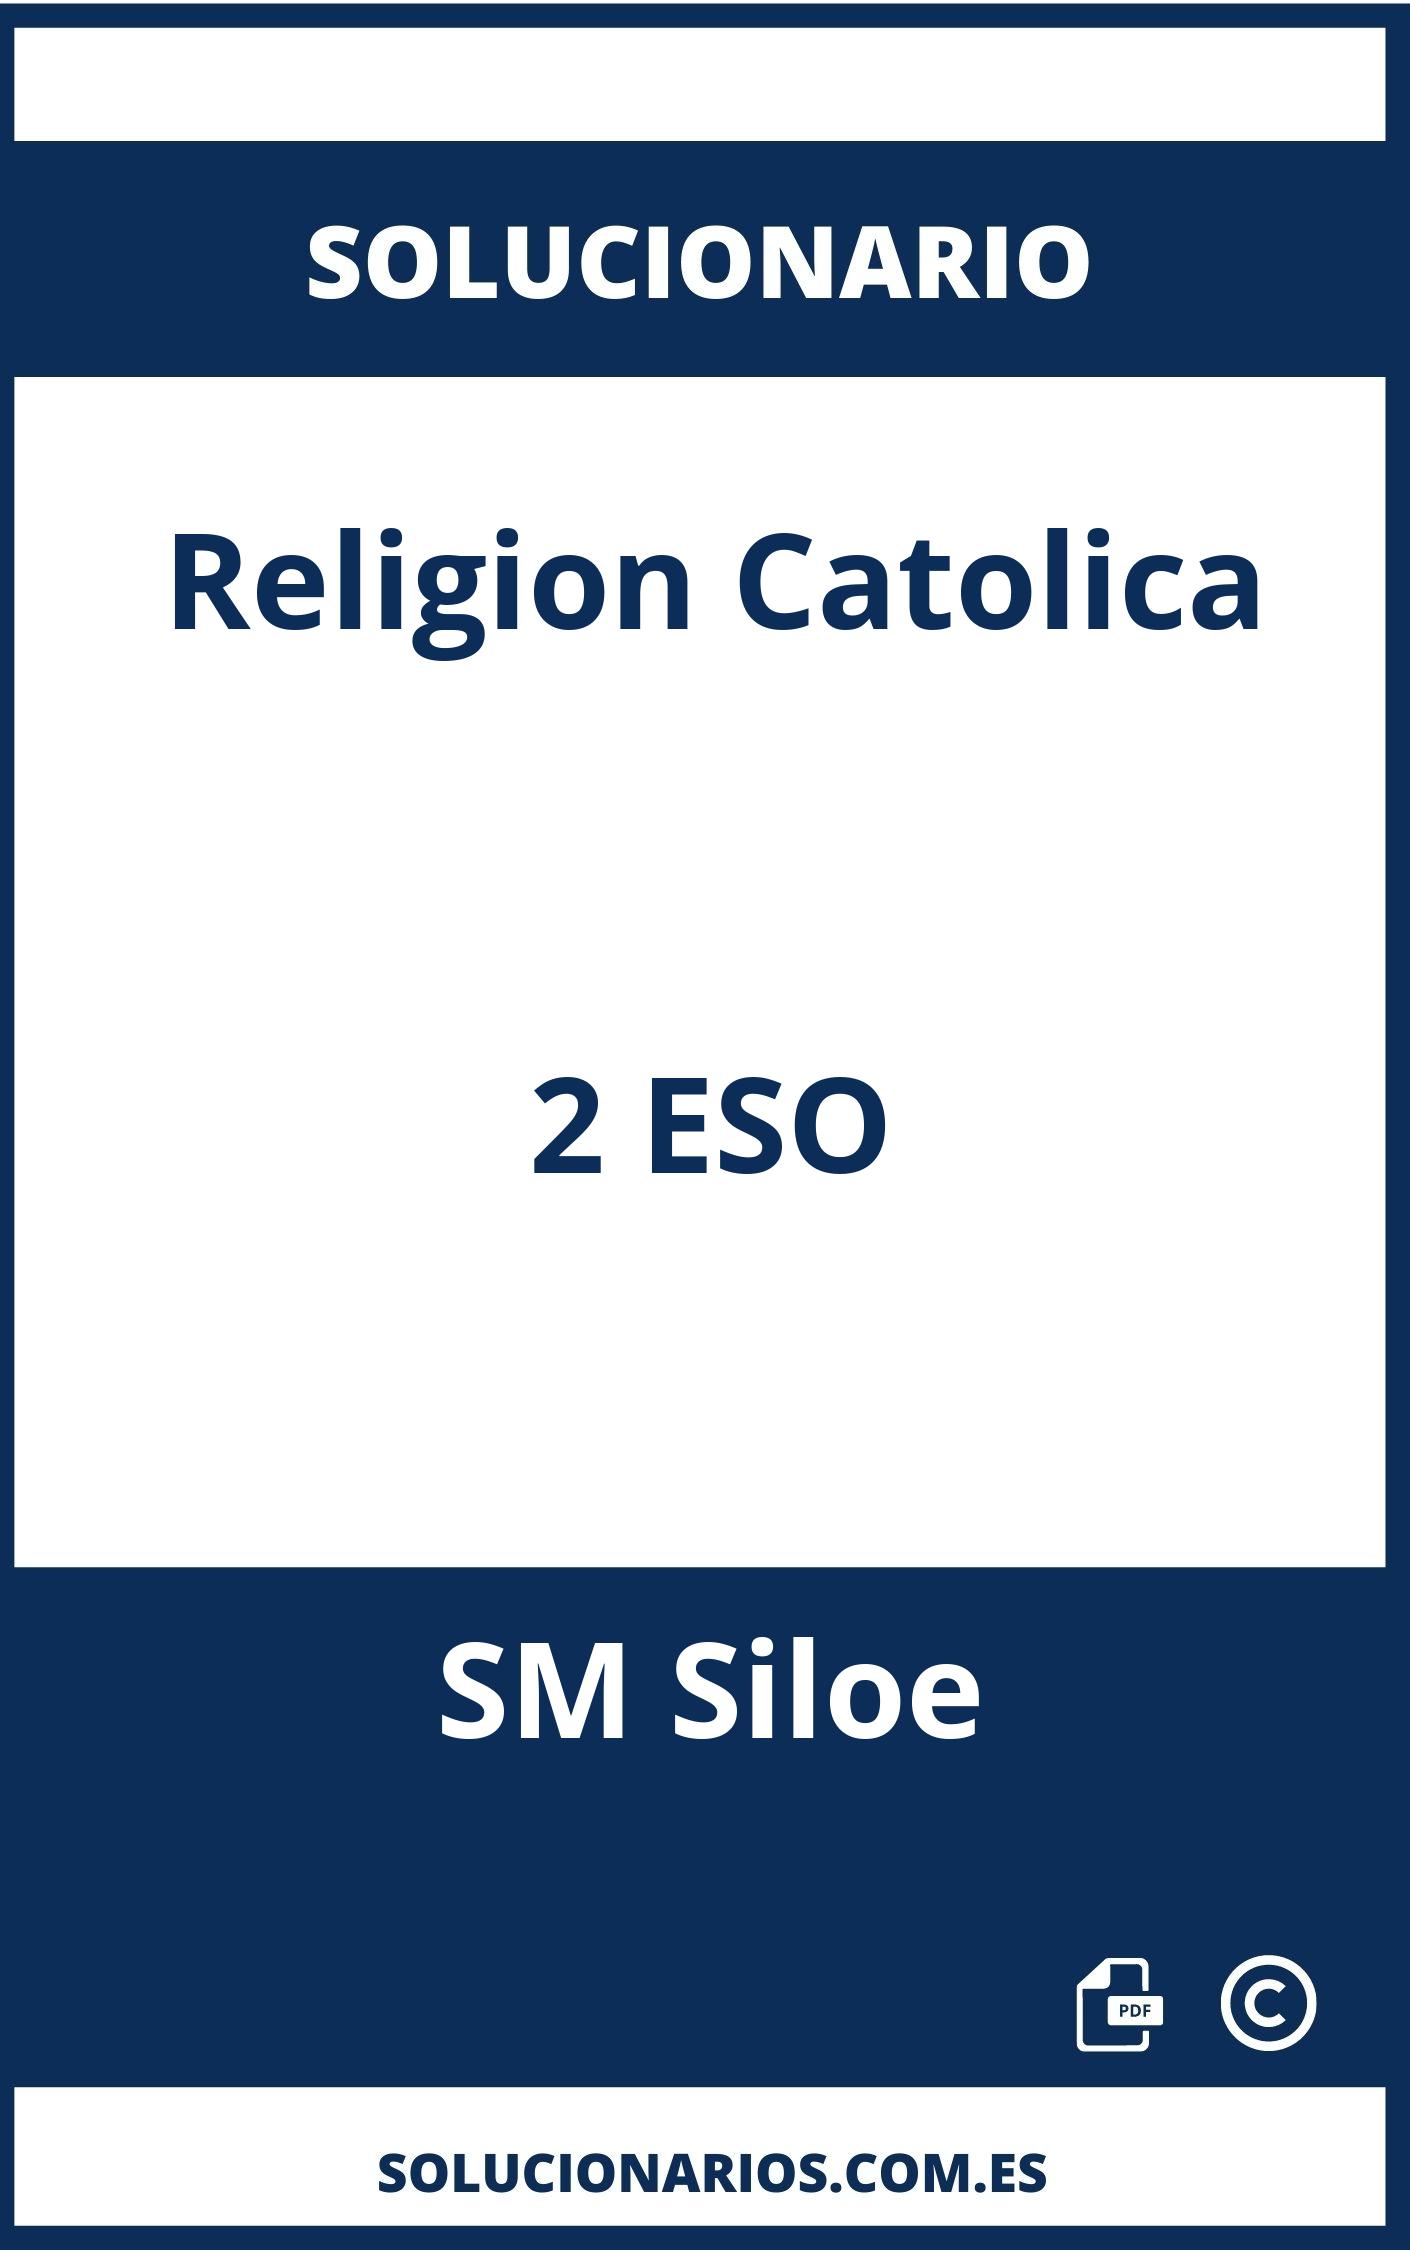 Solucionario Religion Catolica 2 ESO SM Siloe